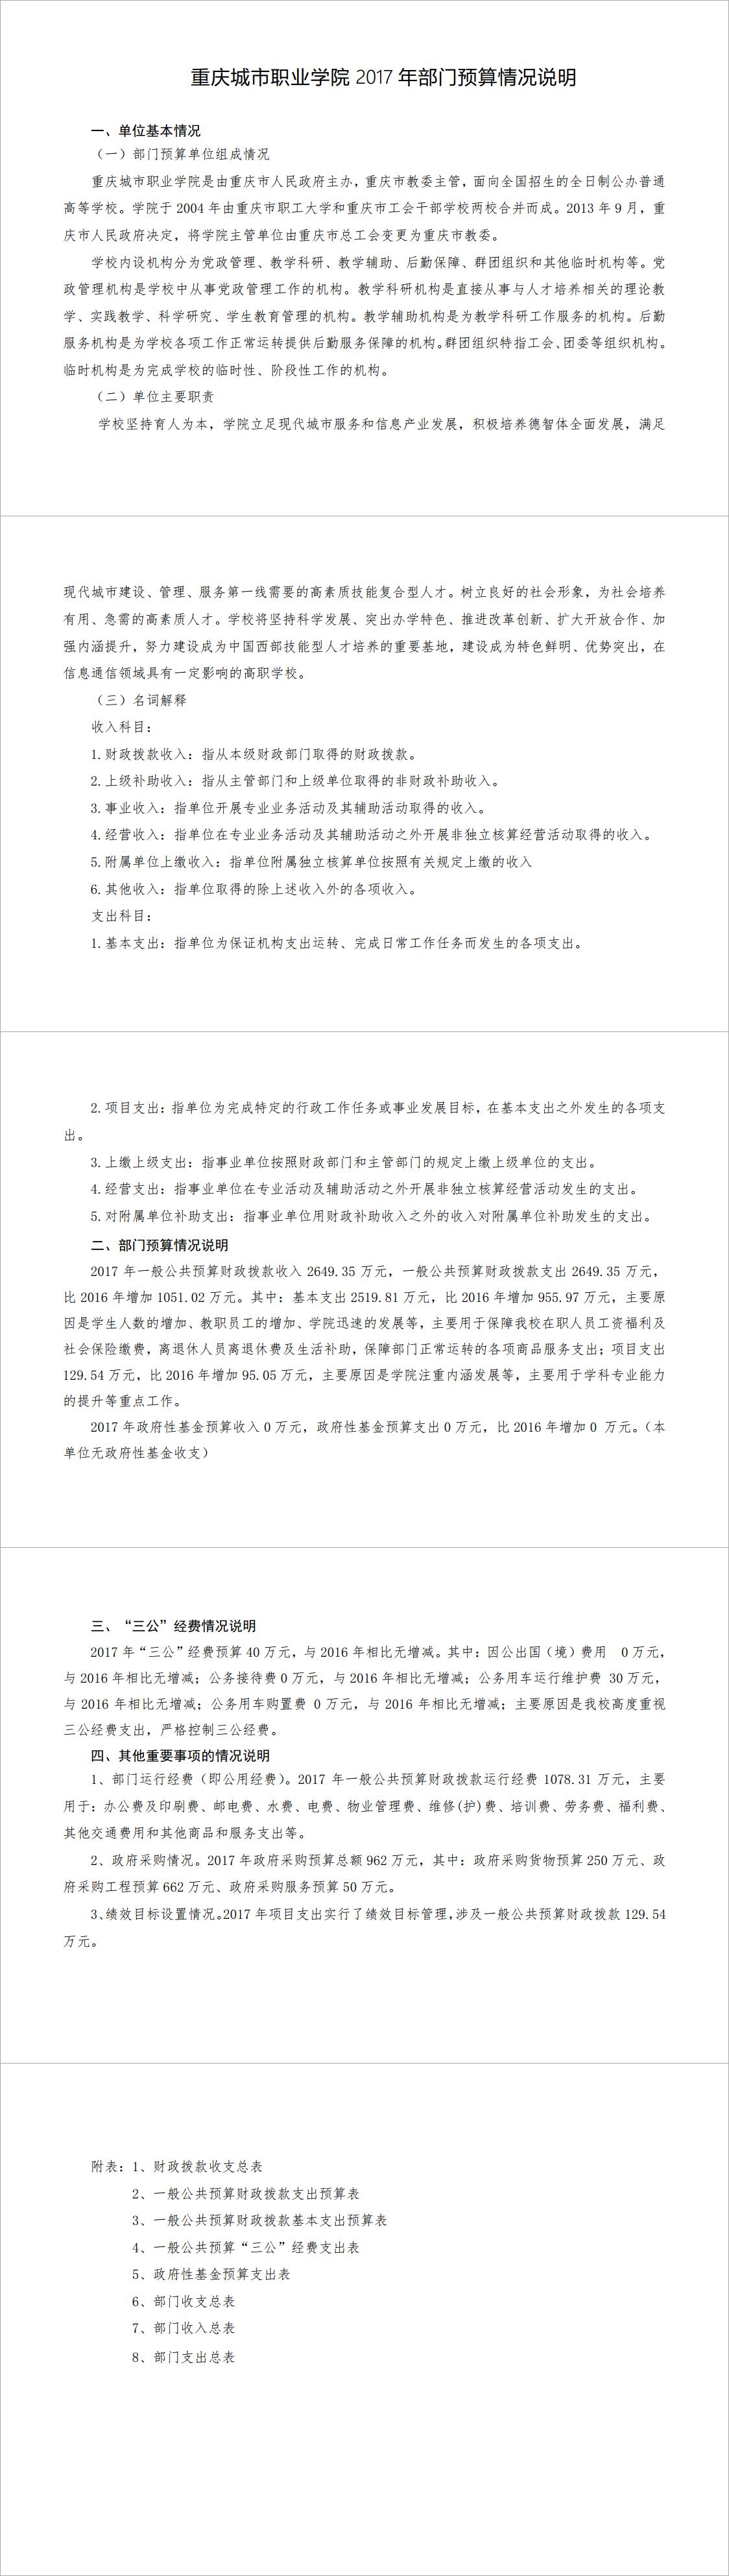 重庆城市职业学院2017年部门预算情况说明